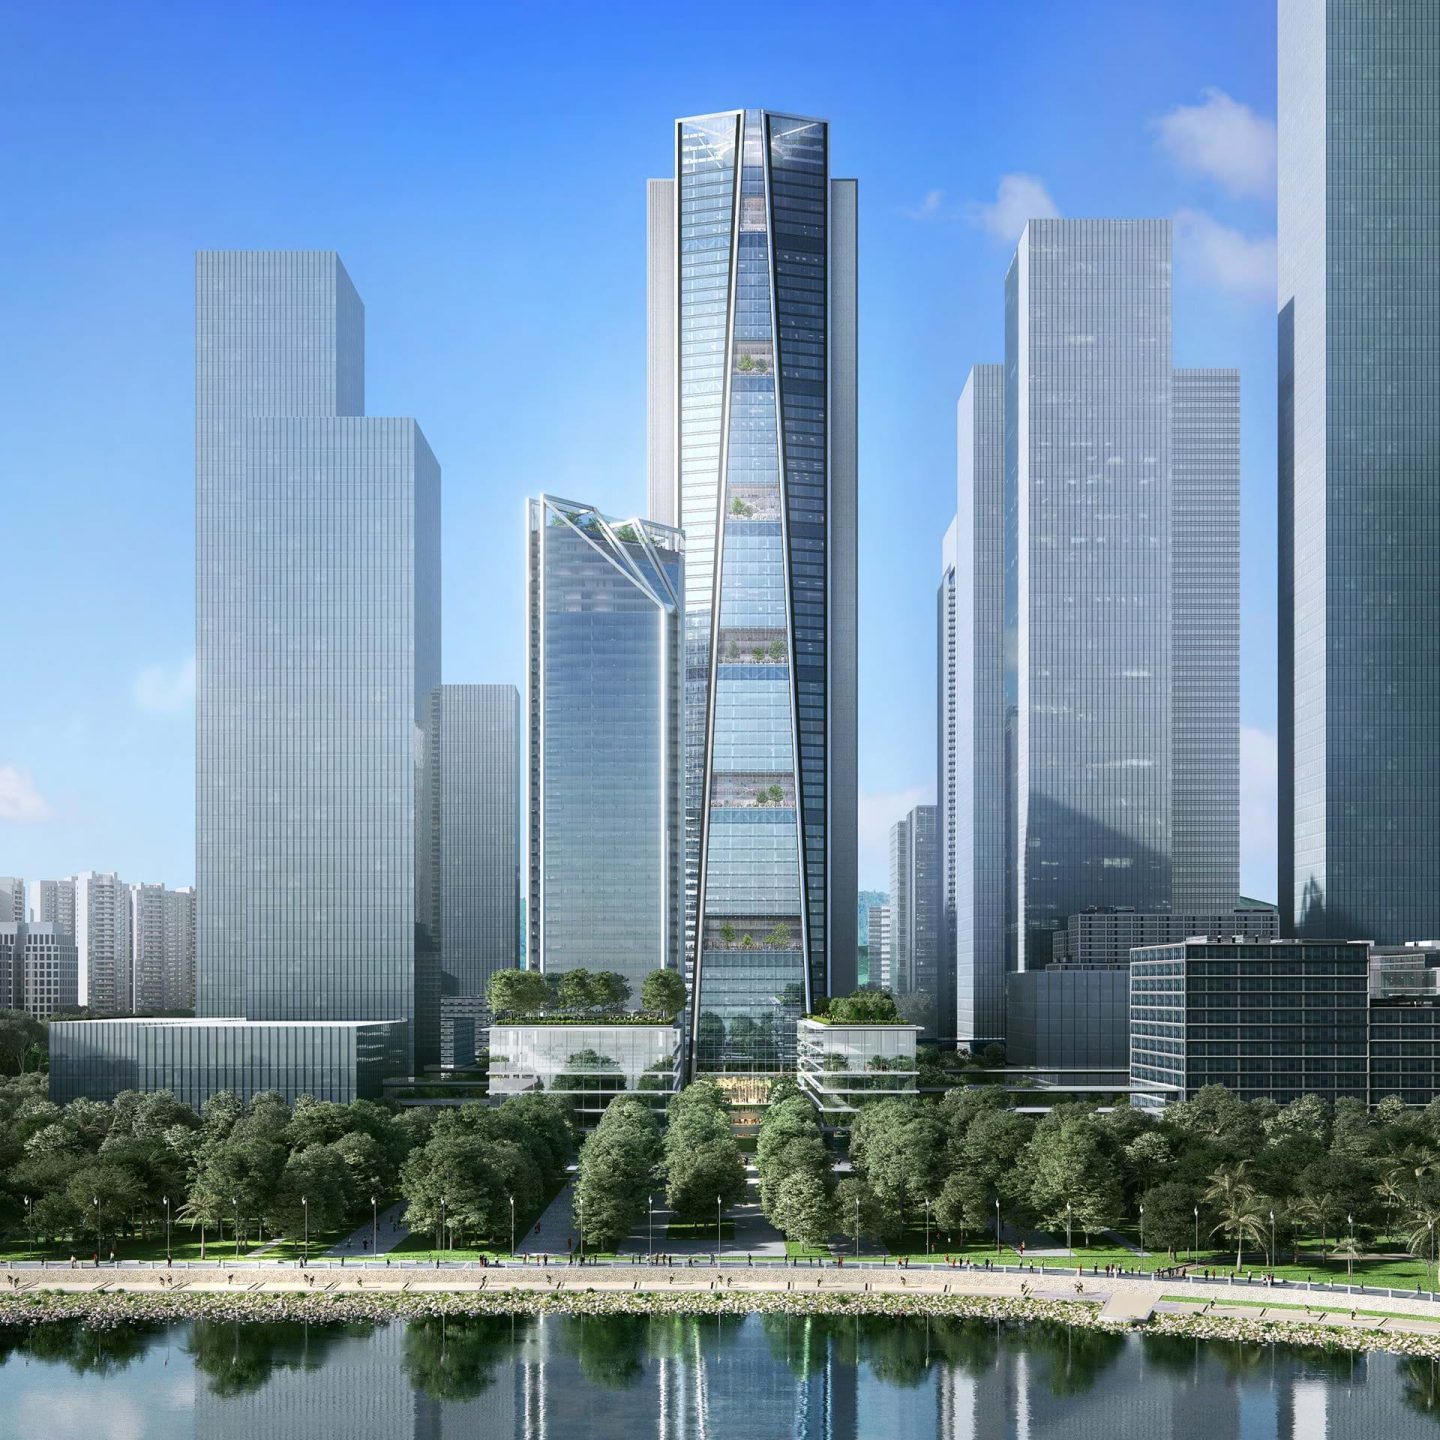 中国の招商銀行が深圳に新本社ビルを建設
担当した建築事務所 Foster + Partnersが設計案を公開